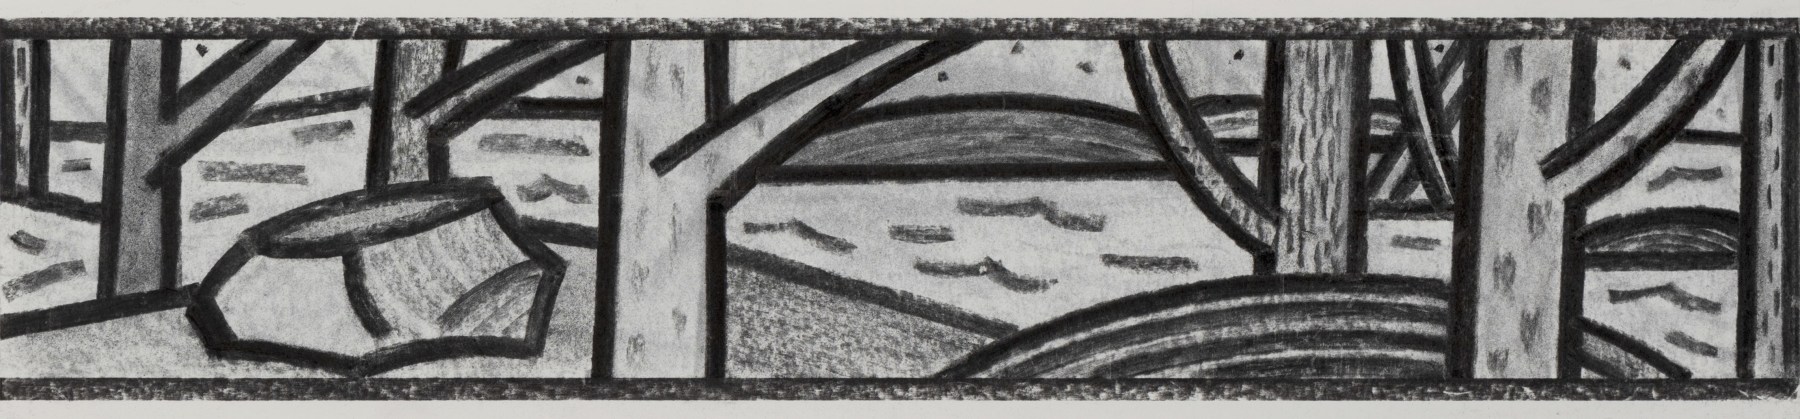 Landscape Series 6 5” x 22” Vine Charcoal On Paper (Lenox 100)